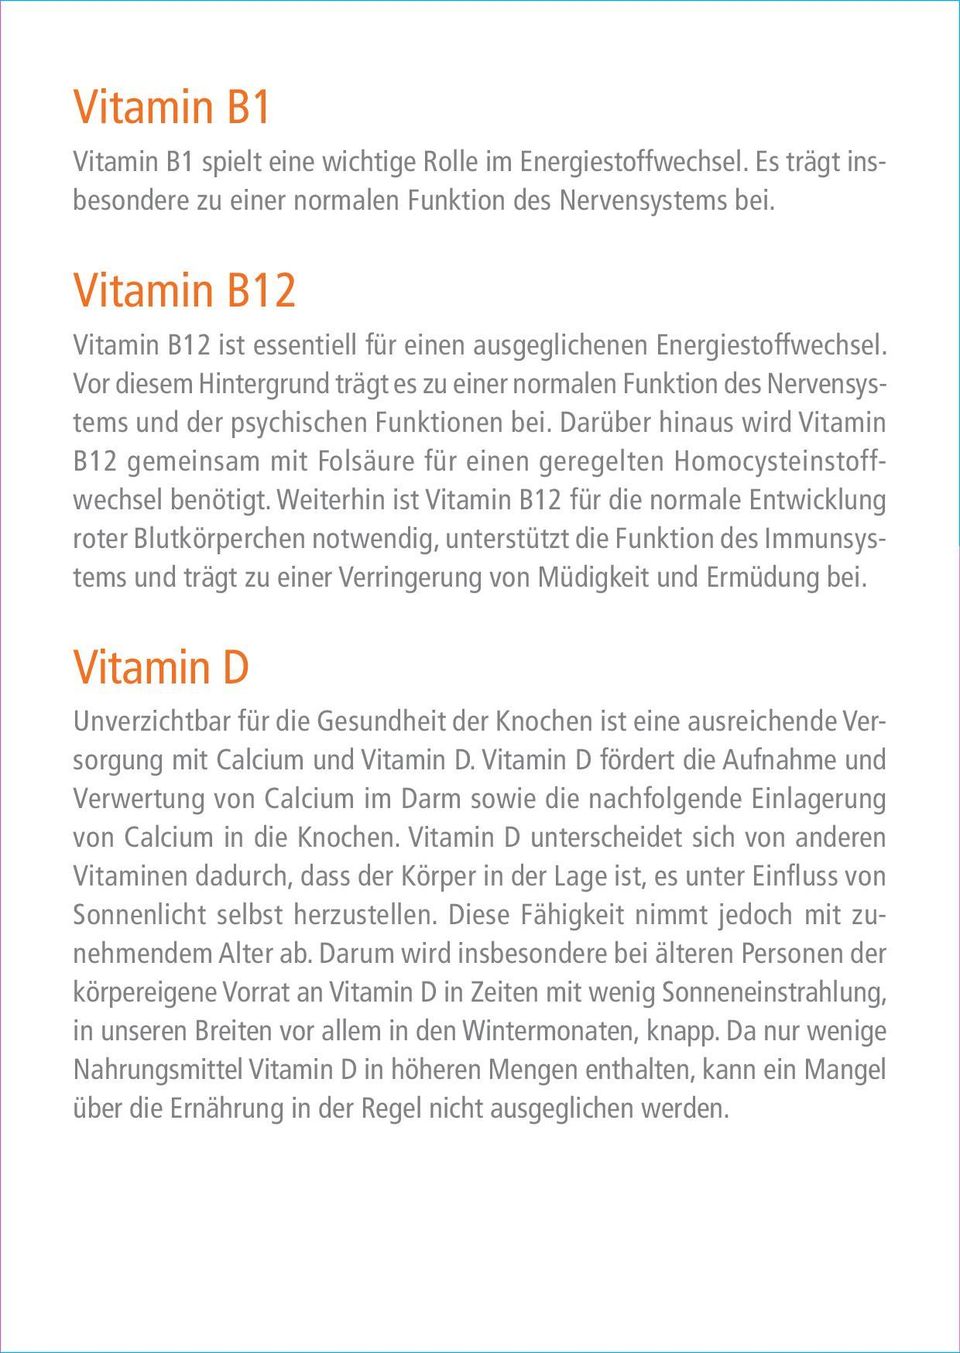 Darüber hinaus wird Vitamin B12 gemeinsam mit Folsäure für einen geregelten Homocysteinstoffwechsel benötigt.